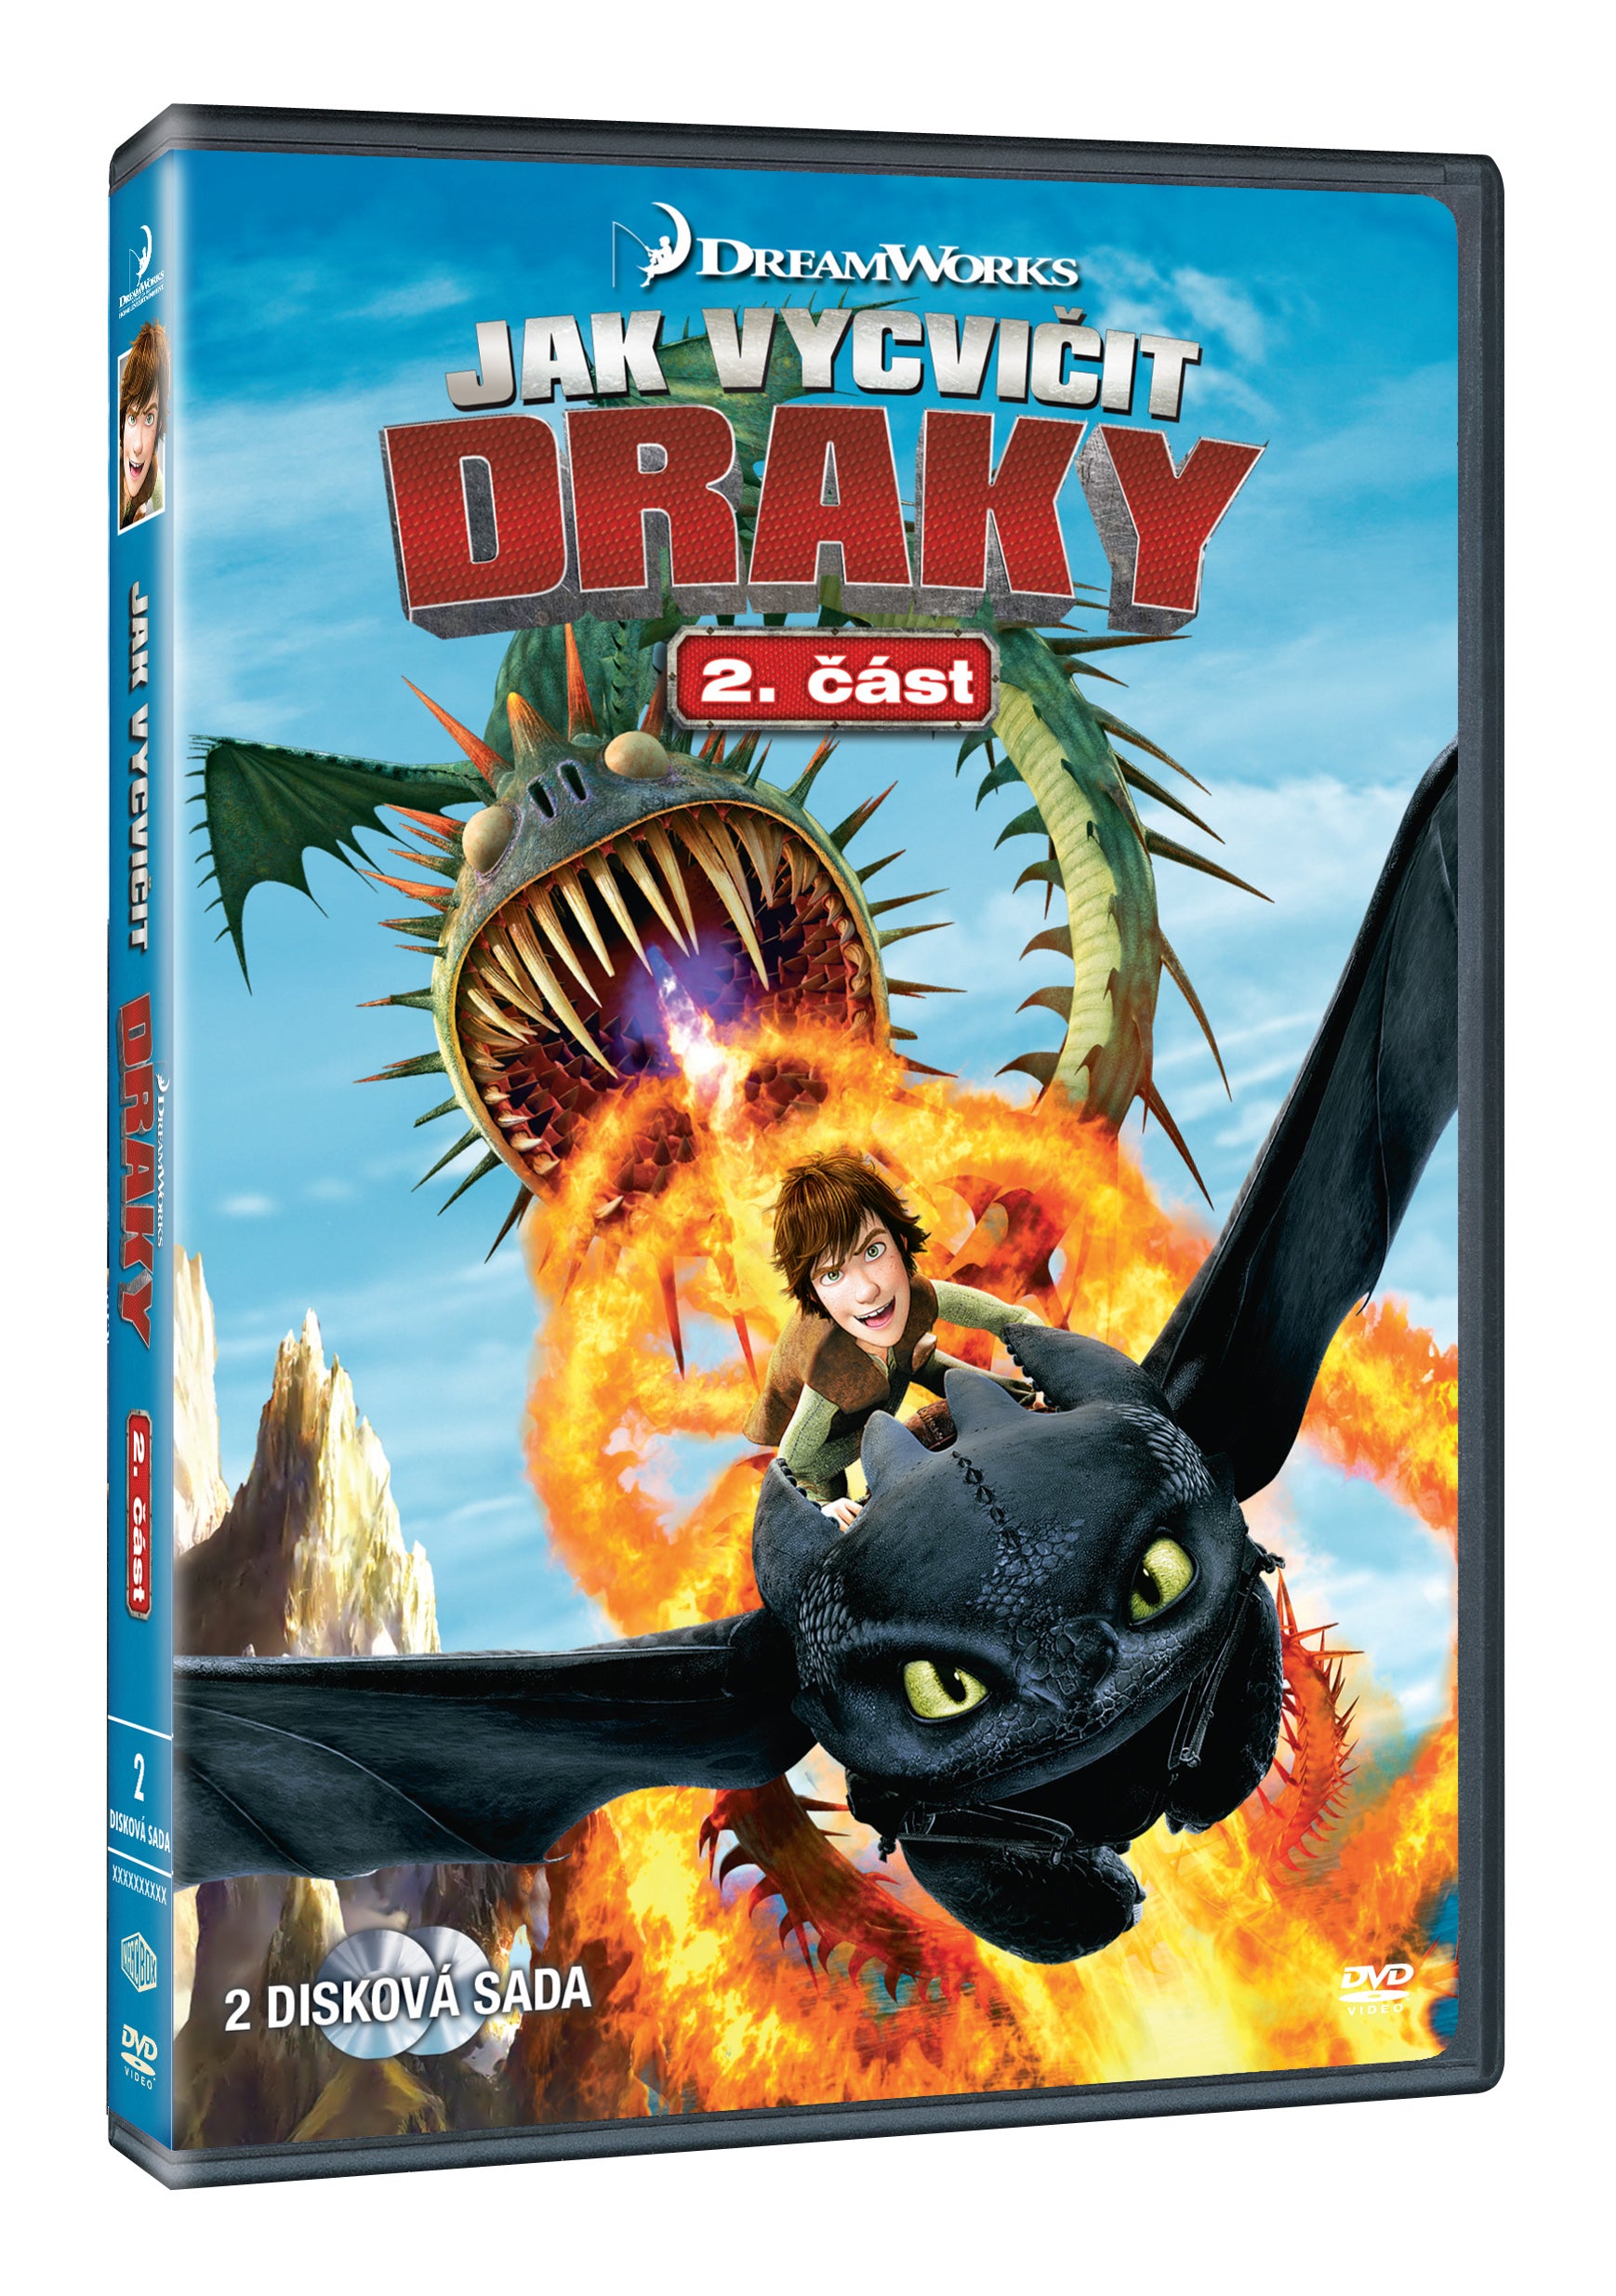 Jak vycvicit draky 2. cast 2DVD / Dragons